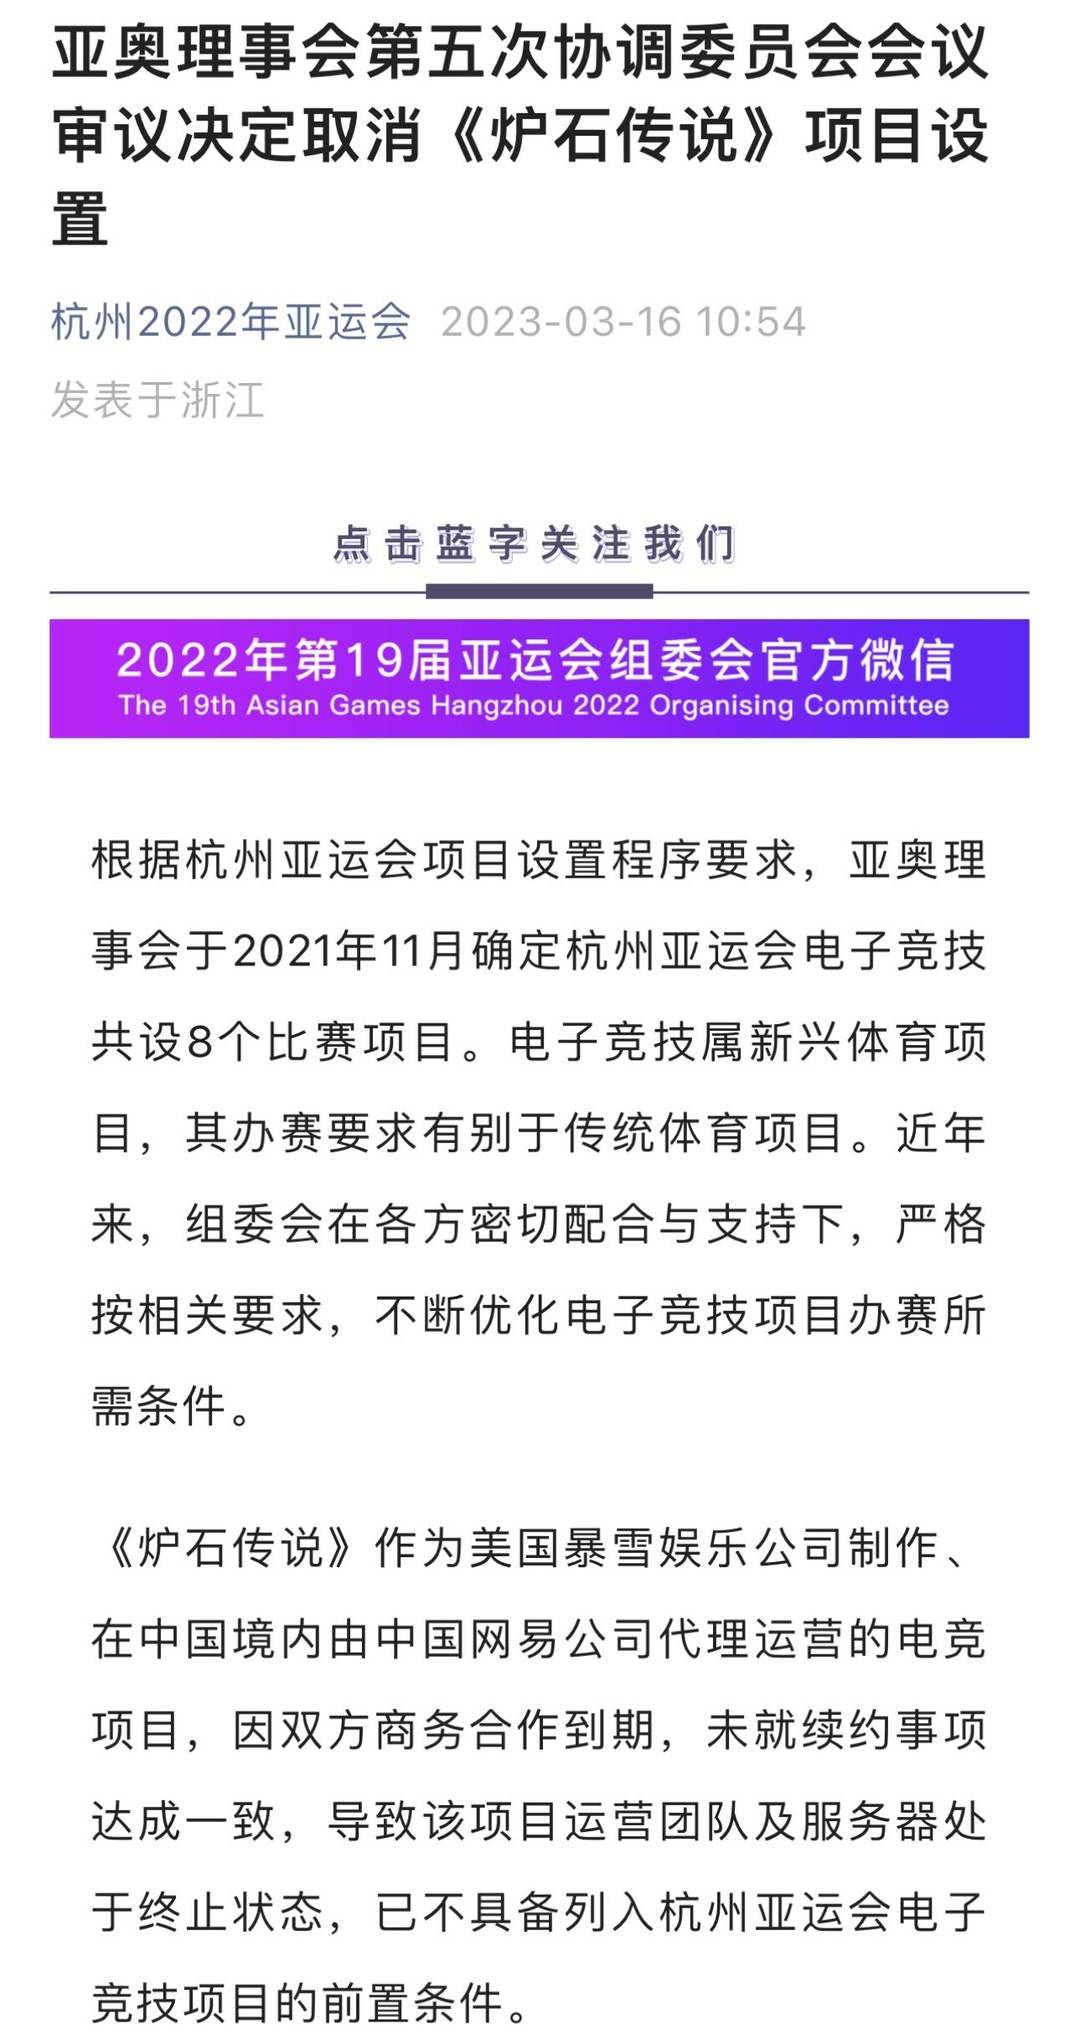 《【天游代理平台注册】受暴雪游戏在中国大陆停服影响 杭州亚运取消《炉石传说》电竞项目设置》